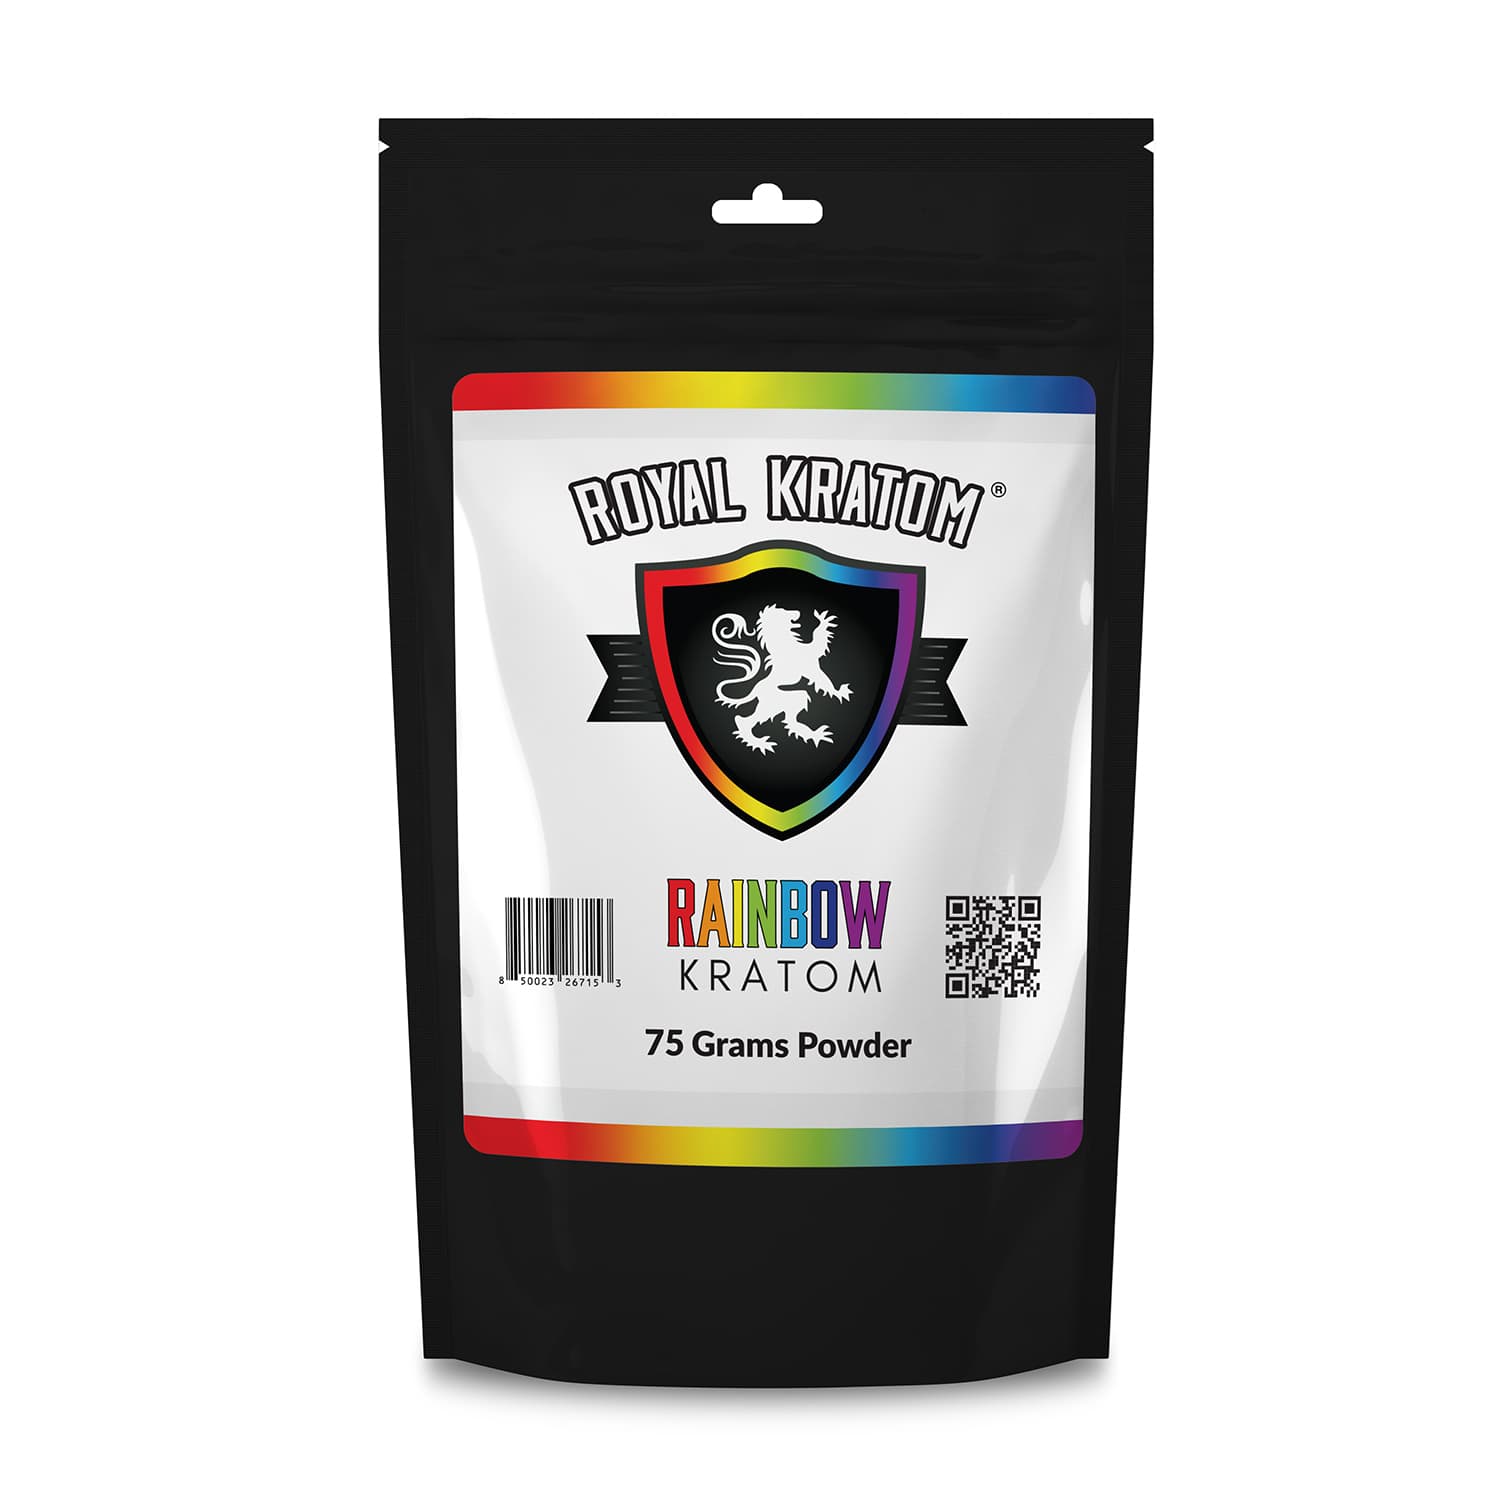 Royal Kratom Rainbow Kratom Blend Powder 75 grams front of package